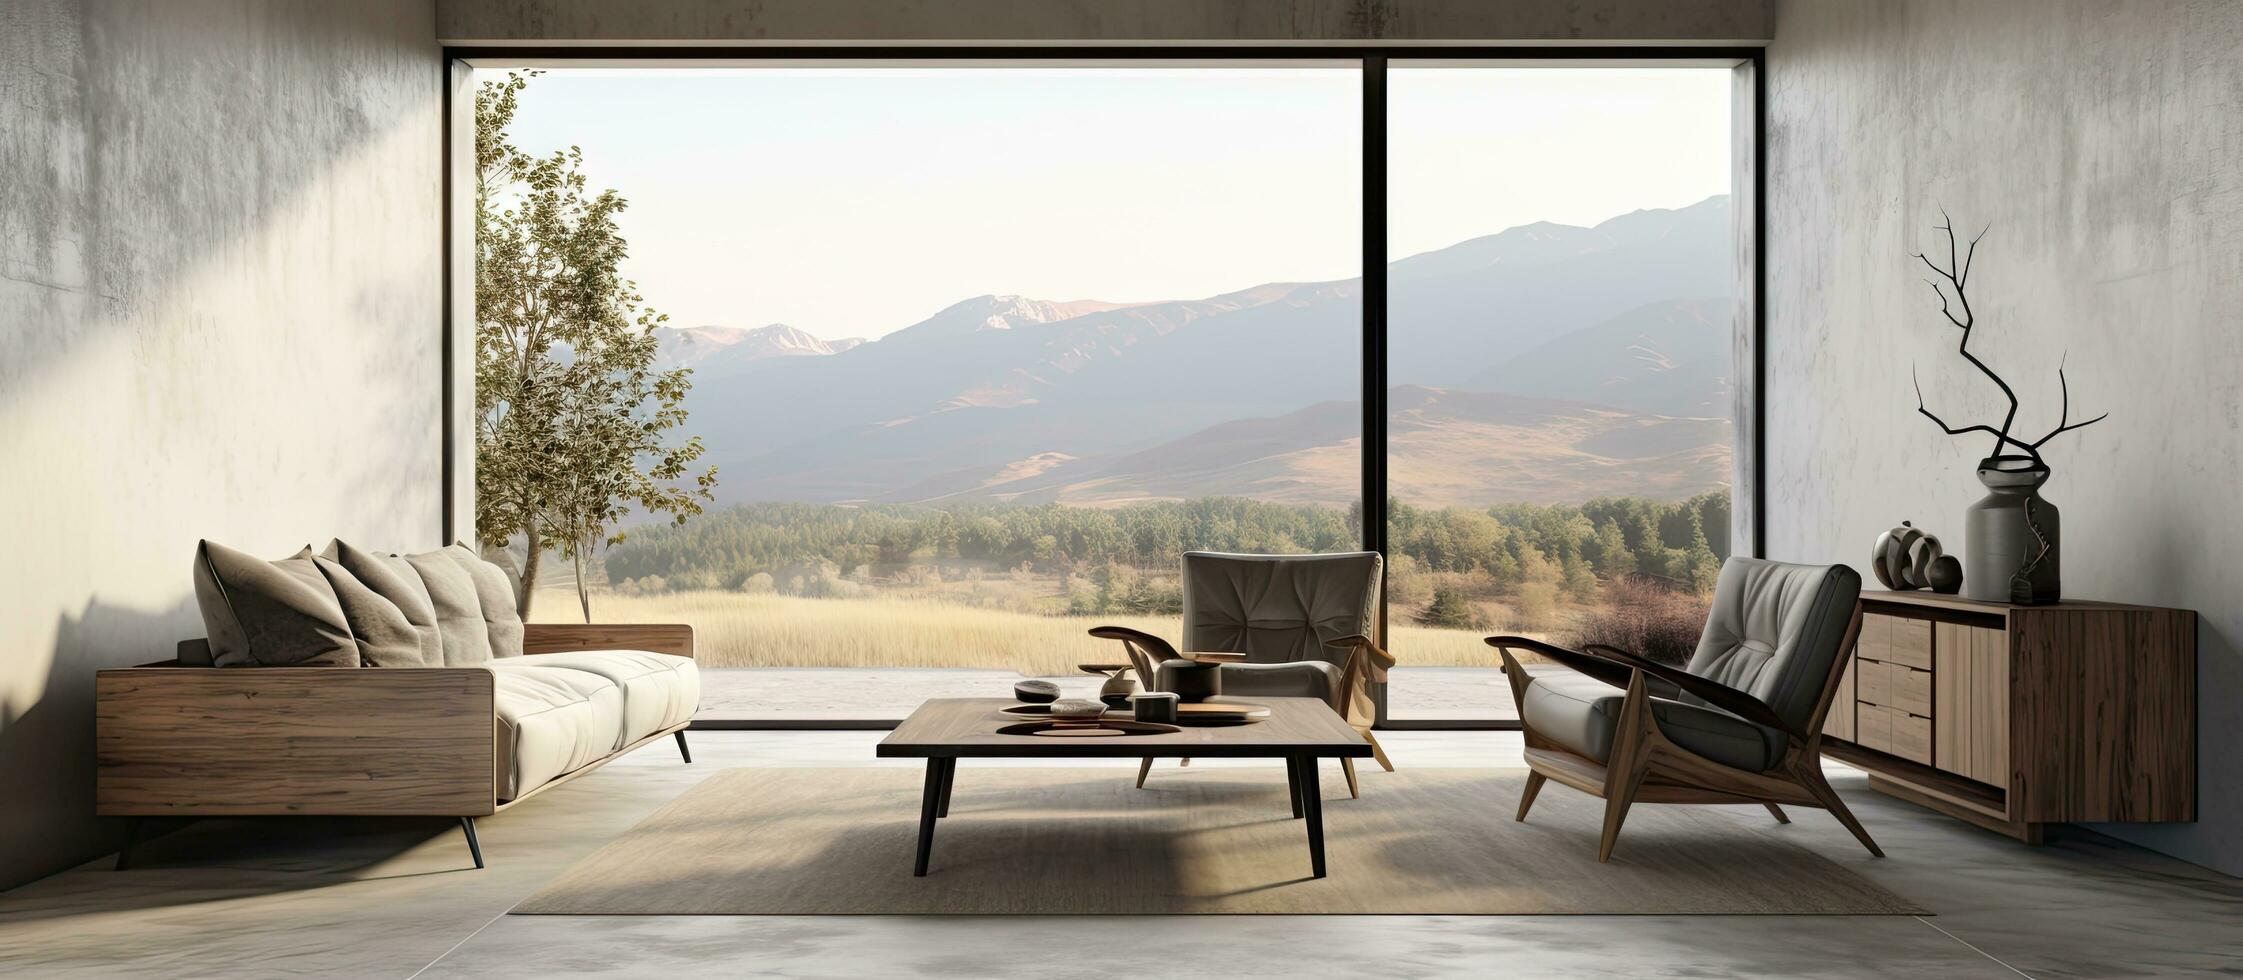 von ein zeitgenössisch gemütlich Raum mit Sessel Anrichte mit Kunstwerk und Kaffee Tabelle auf ein Beton Fußboden Panorama- Landschaft Aussicht von ein groß Fenster foto